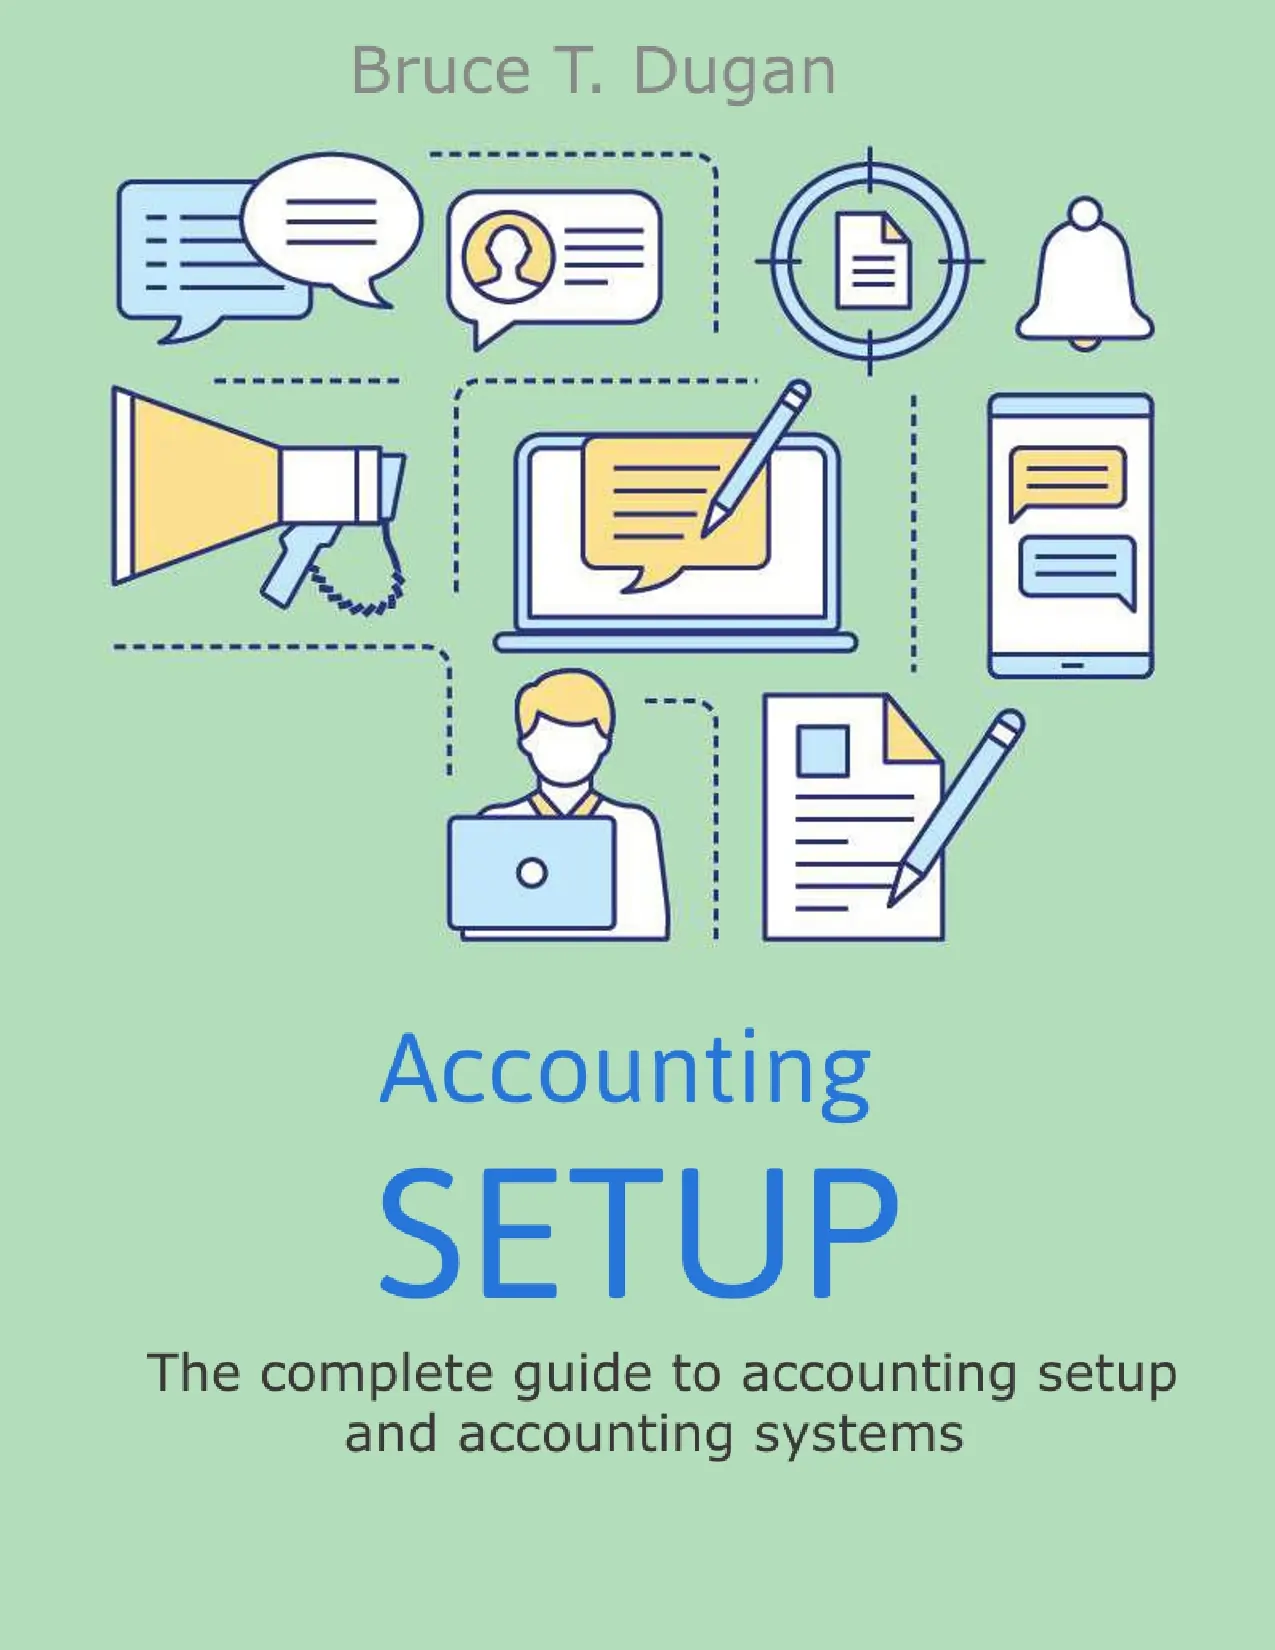 Accounting setup